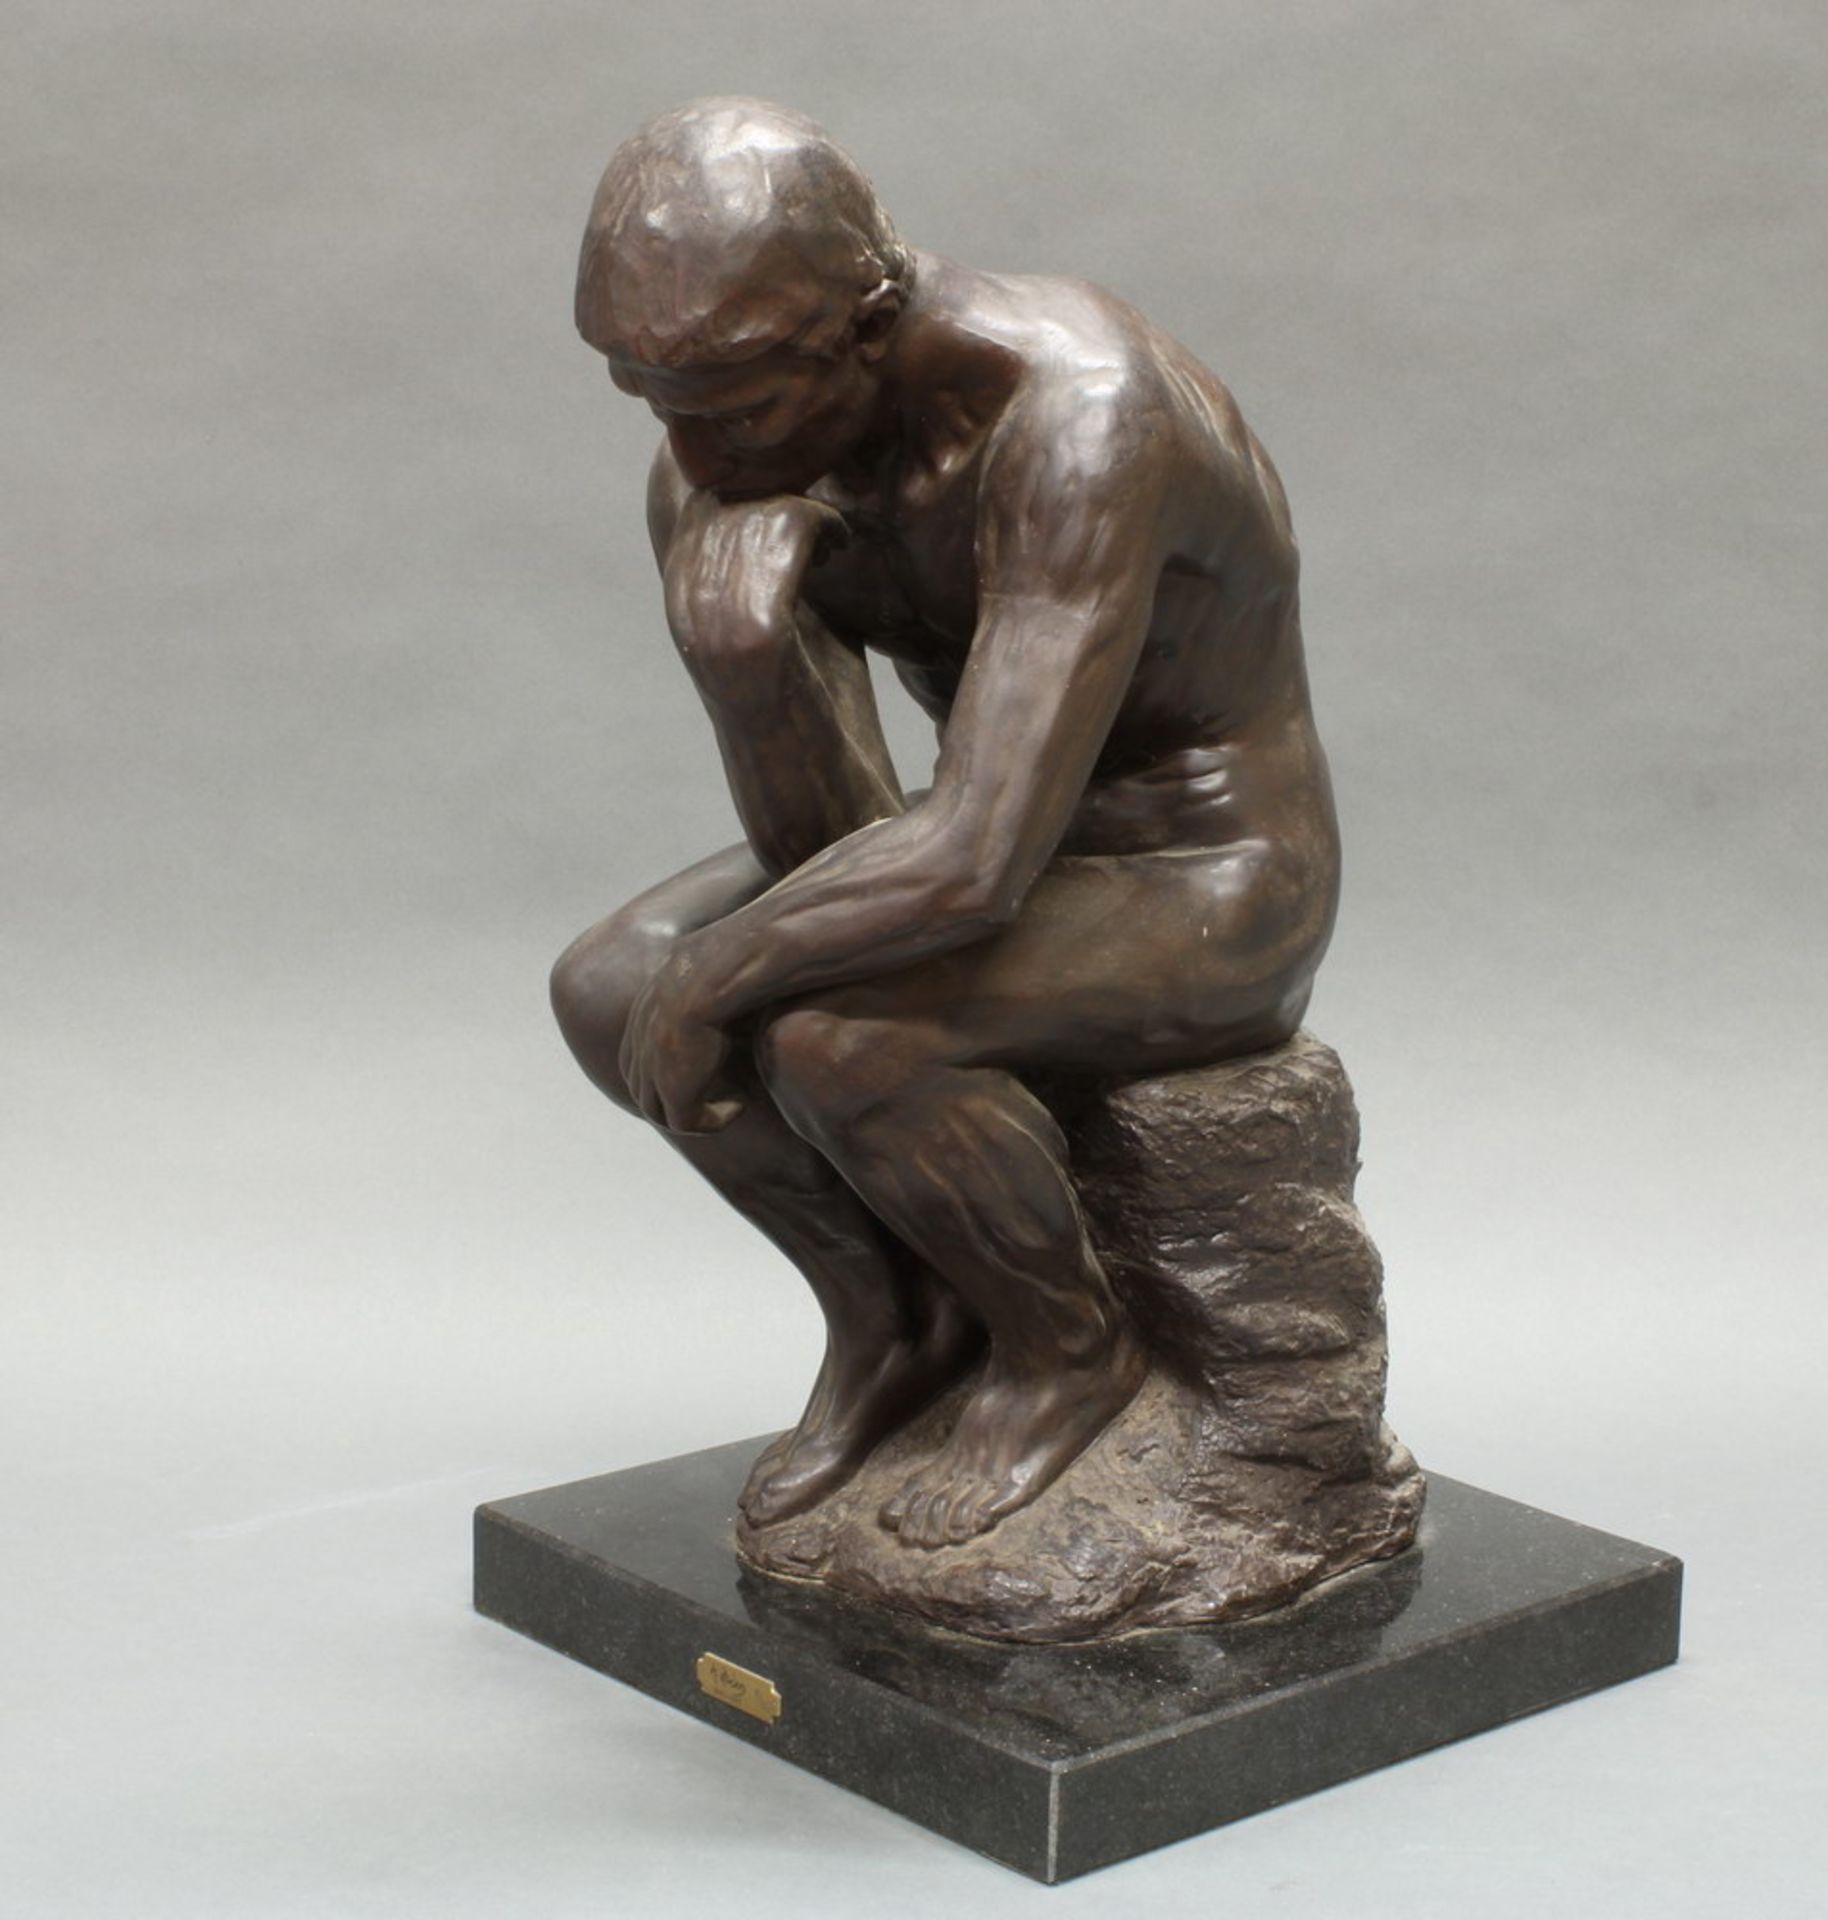 Plastik, dunkelbraun patiniert, wohl Keramik, "Der Denker", nach Rodin, neuzeitlich, auf - Image 3 of 5